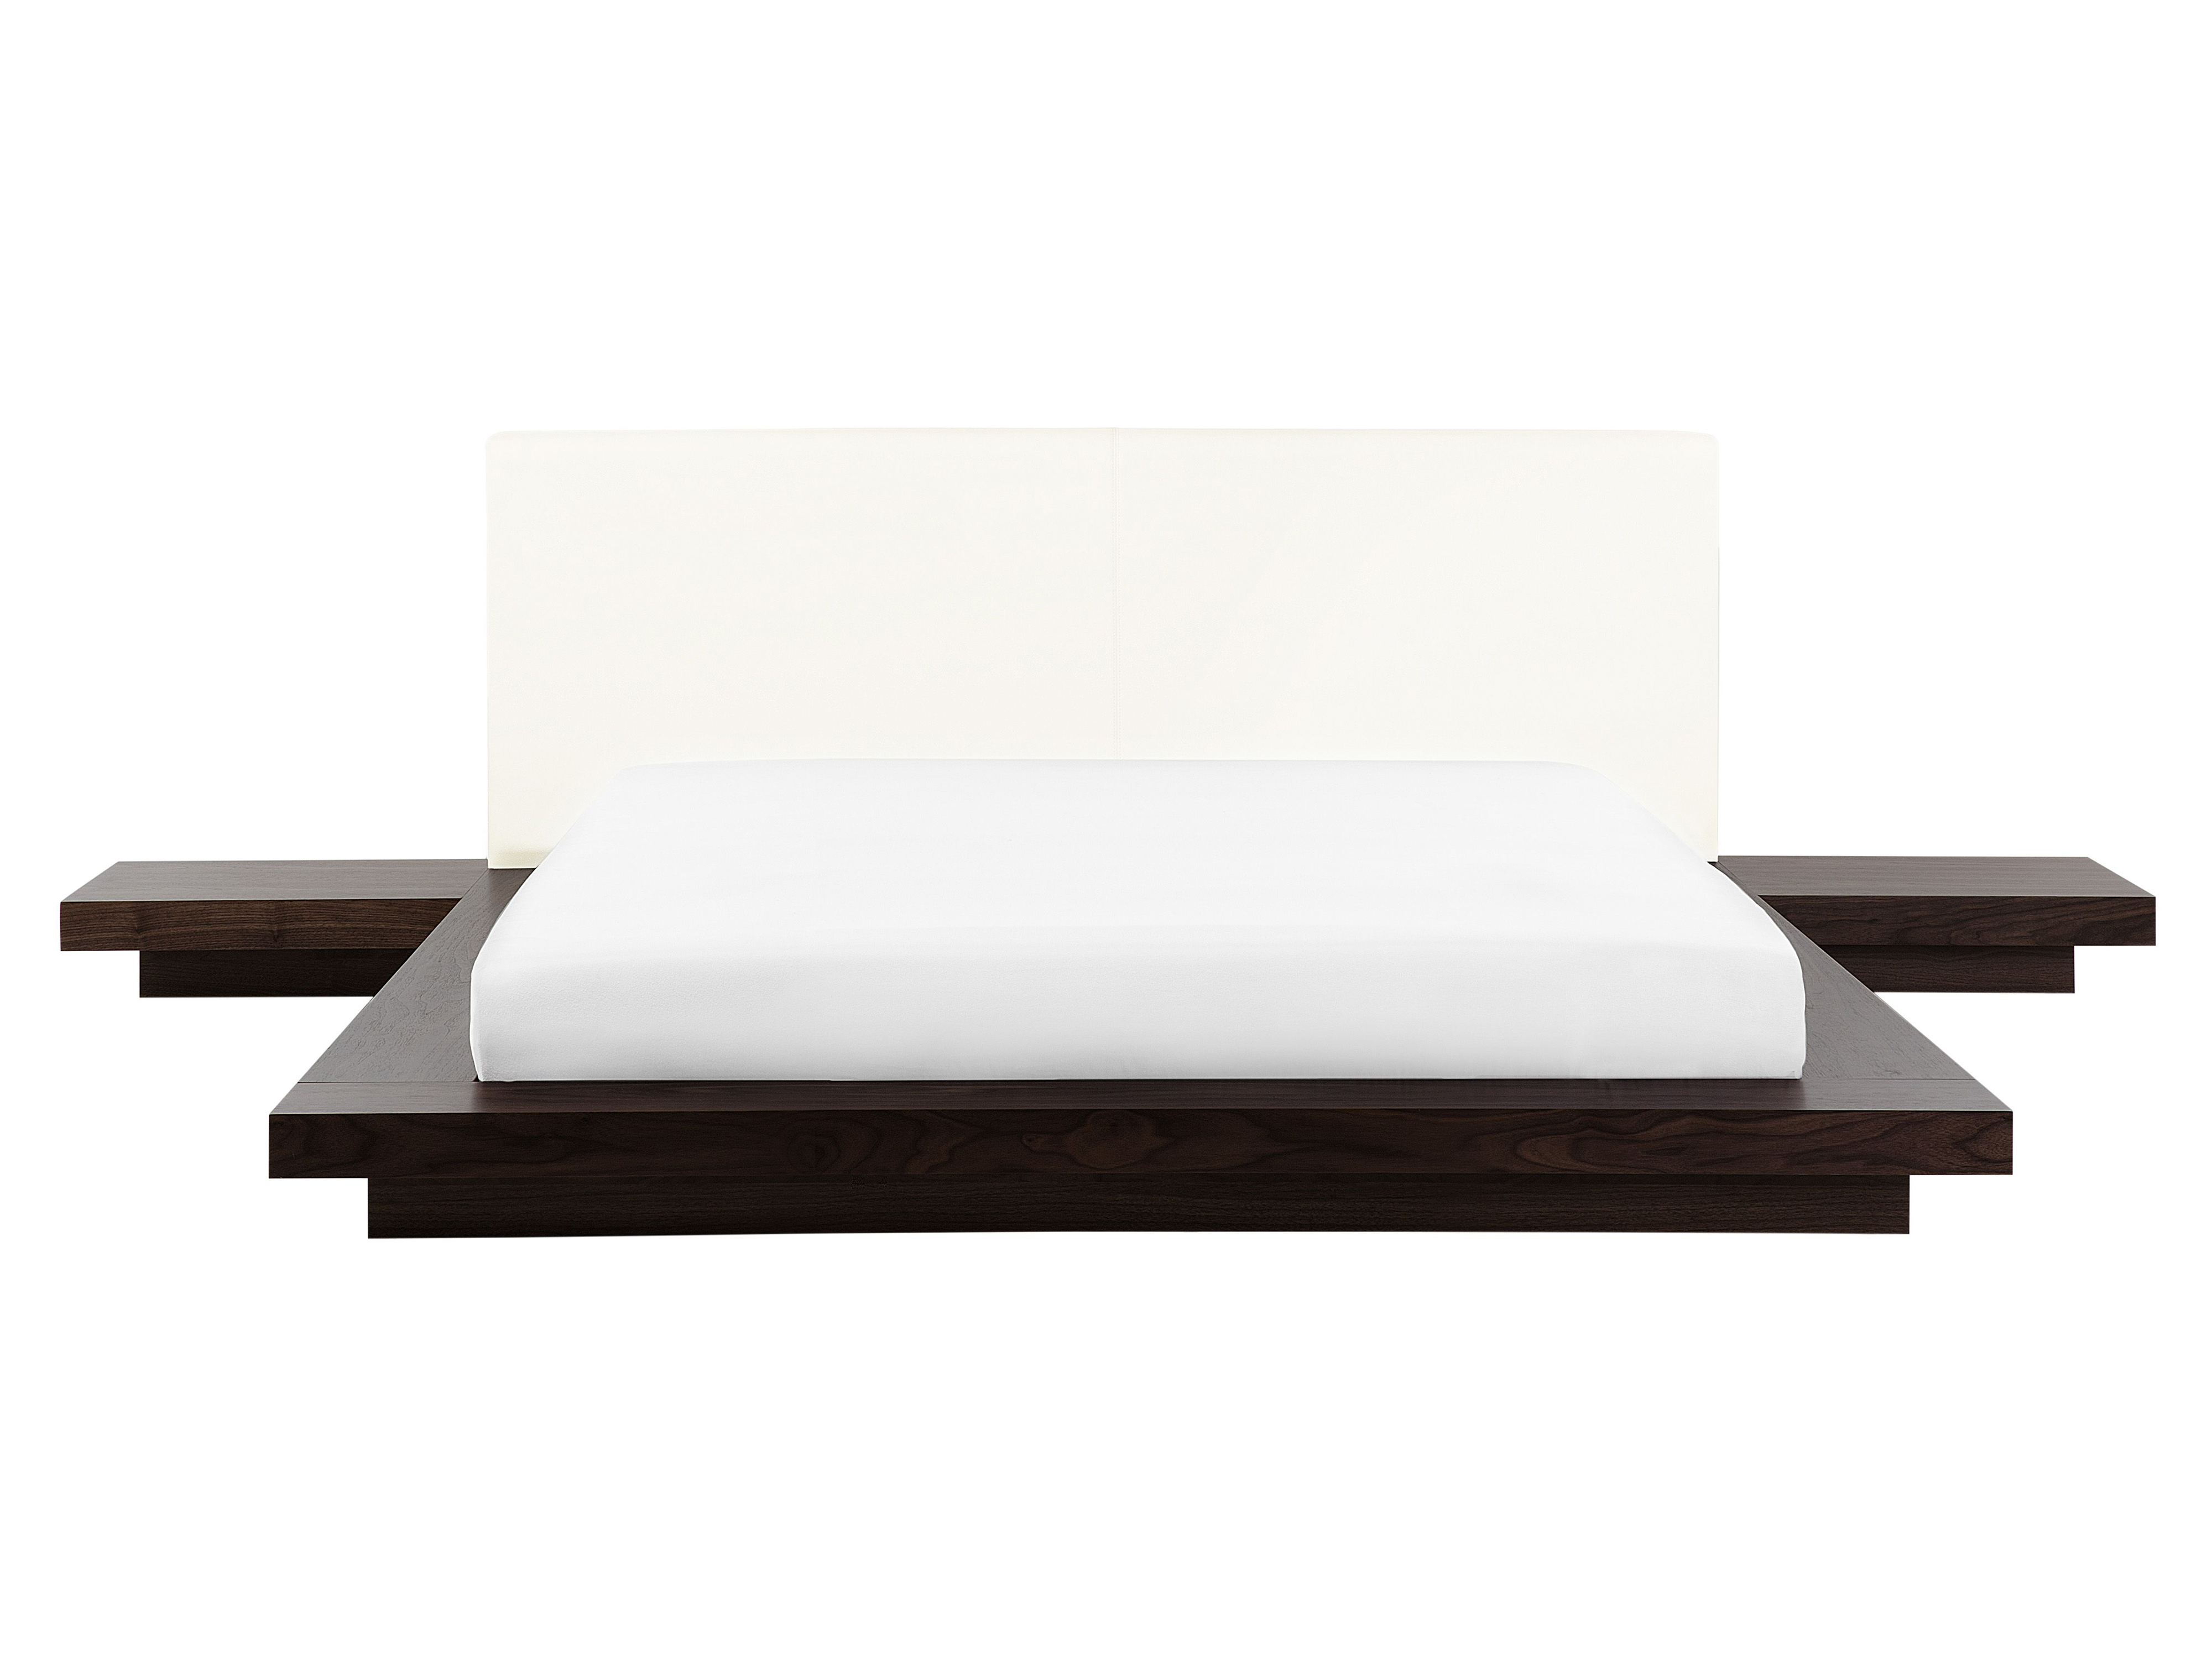 Łóżko wodne ze stolikami nocnymi 160 x 200 cm ciemne drewno ZEN